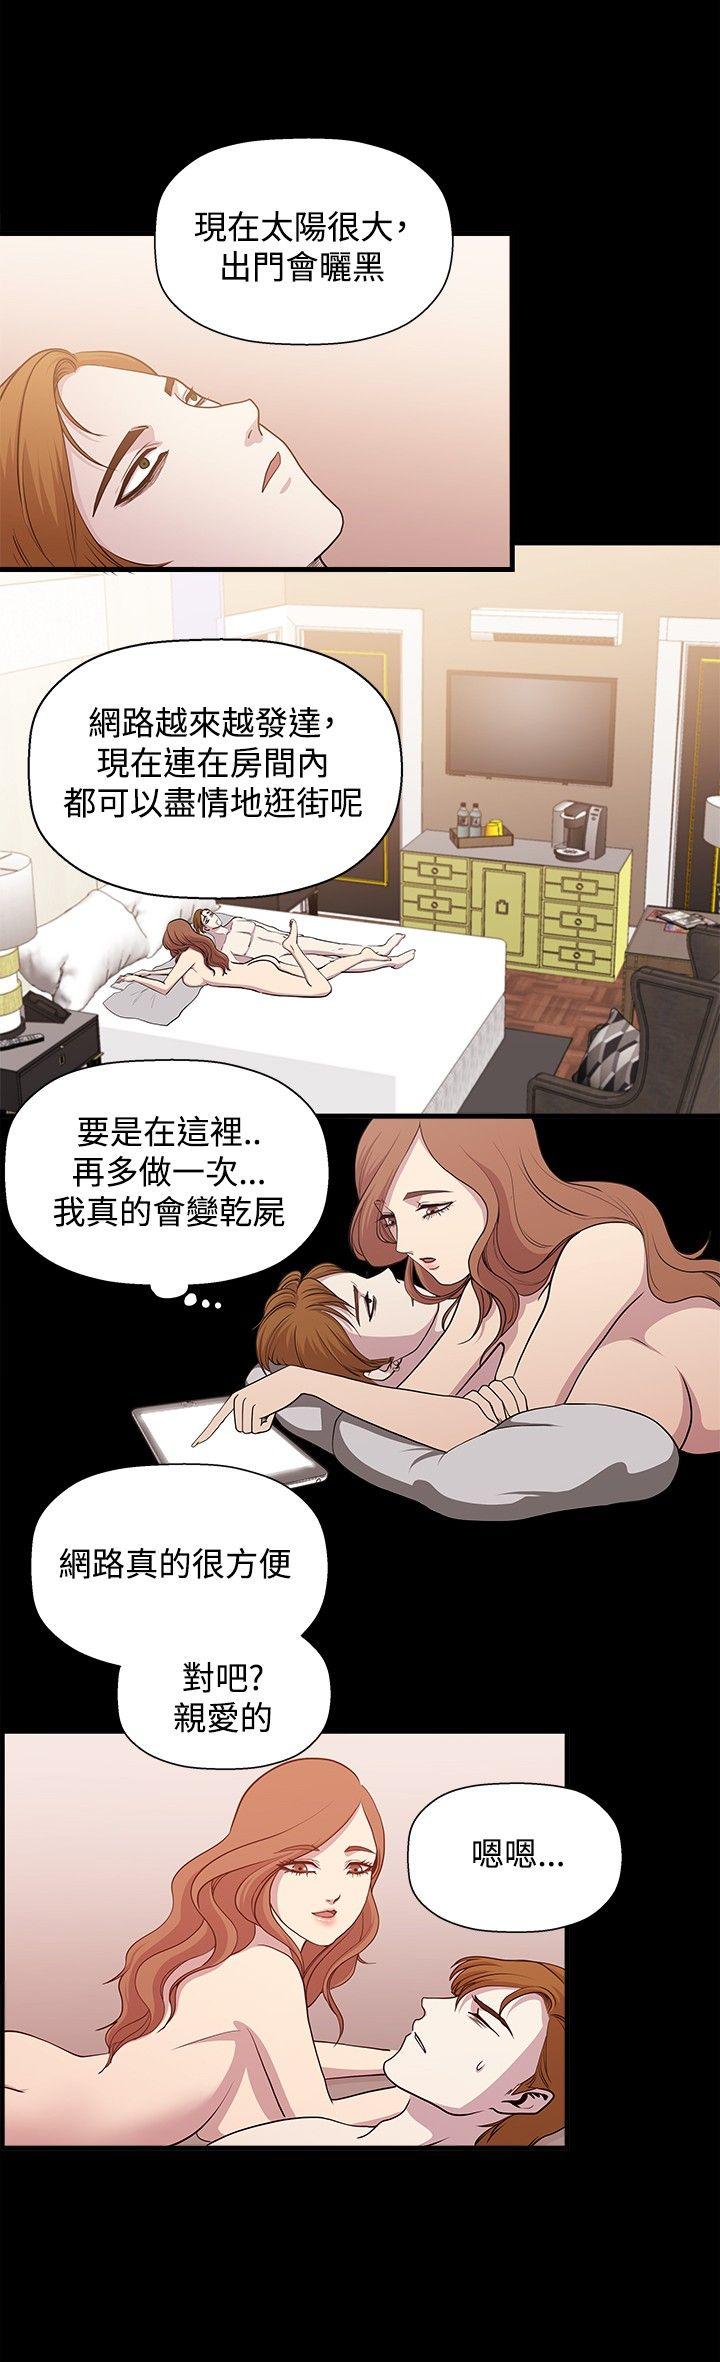 韩国污漫画 贊助者 第16话 4